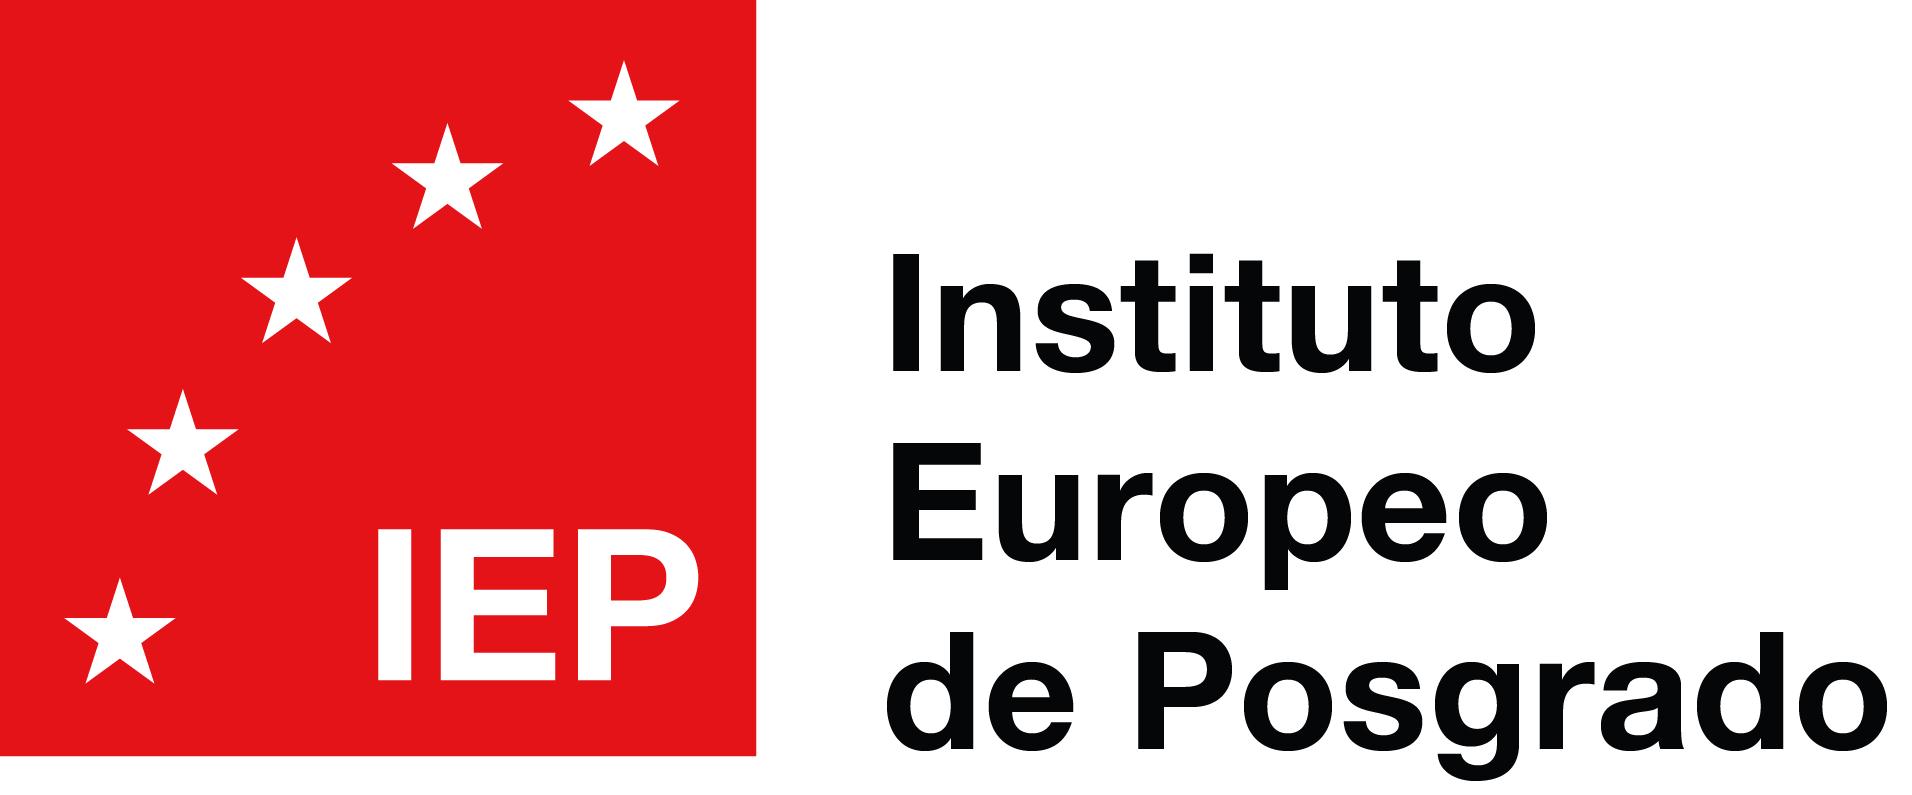 Máster en Gerencia Integral de Riesgos - IEP - Instituto Europeo de Posgrado